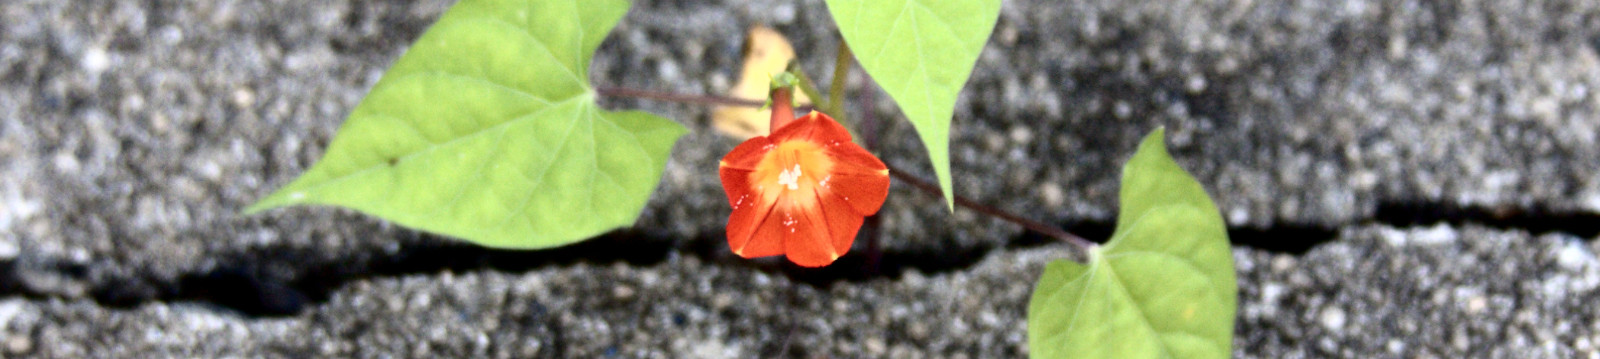 Flower growing in Asphalt